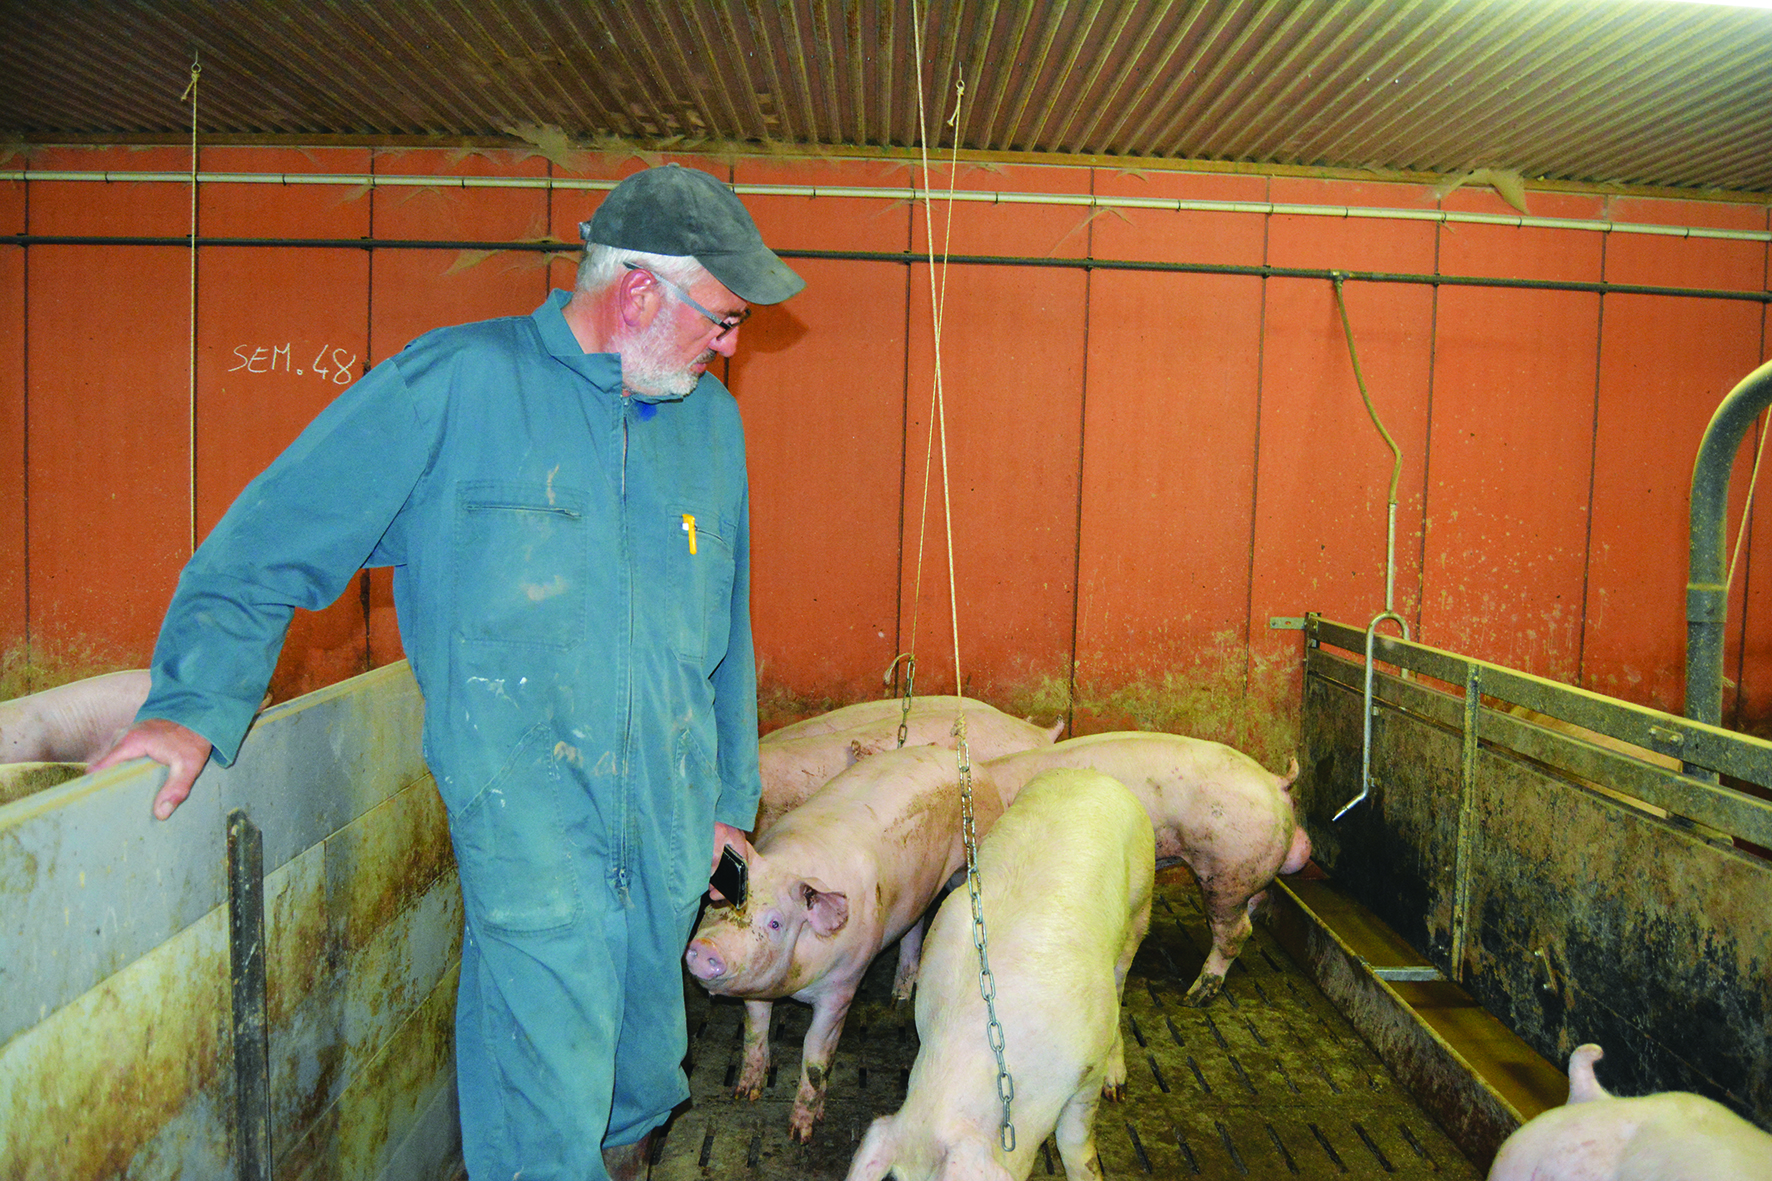 La réglementation porc bio - Produire Porc Bio - tout savoir pour produire  du porc en bio